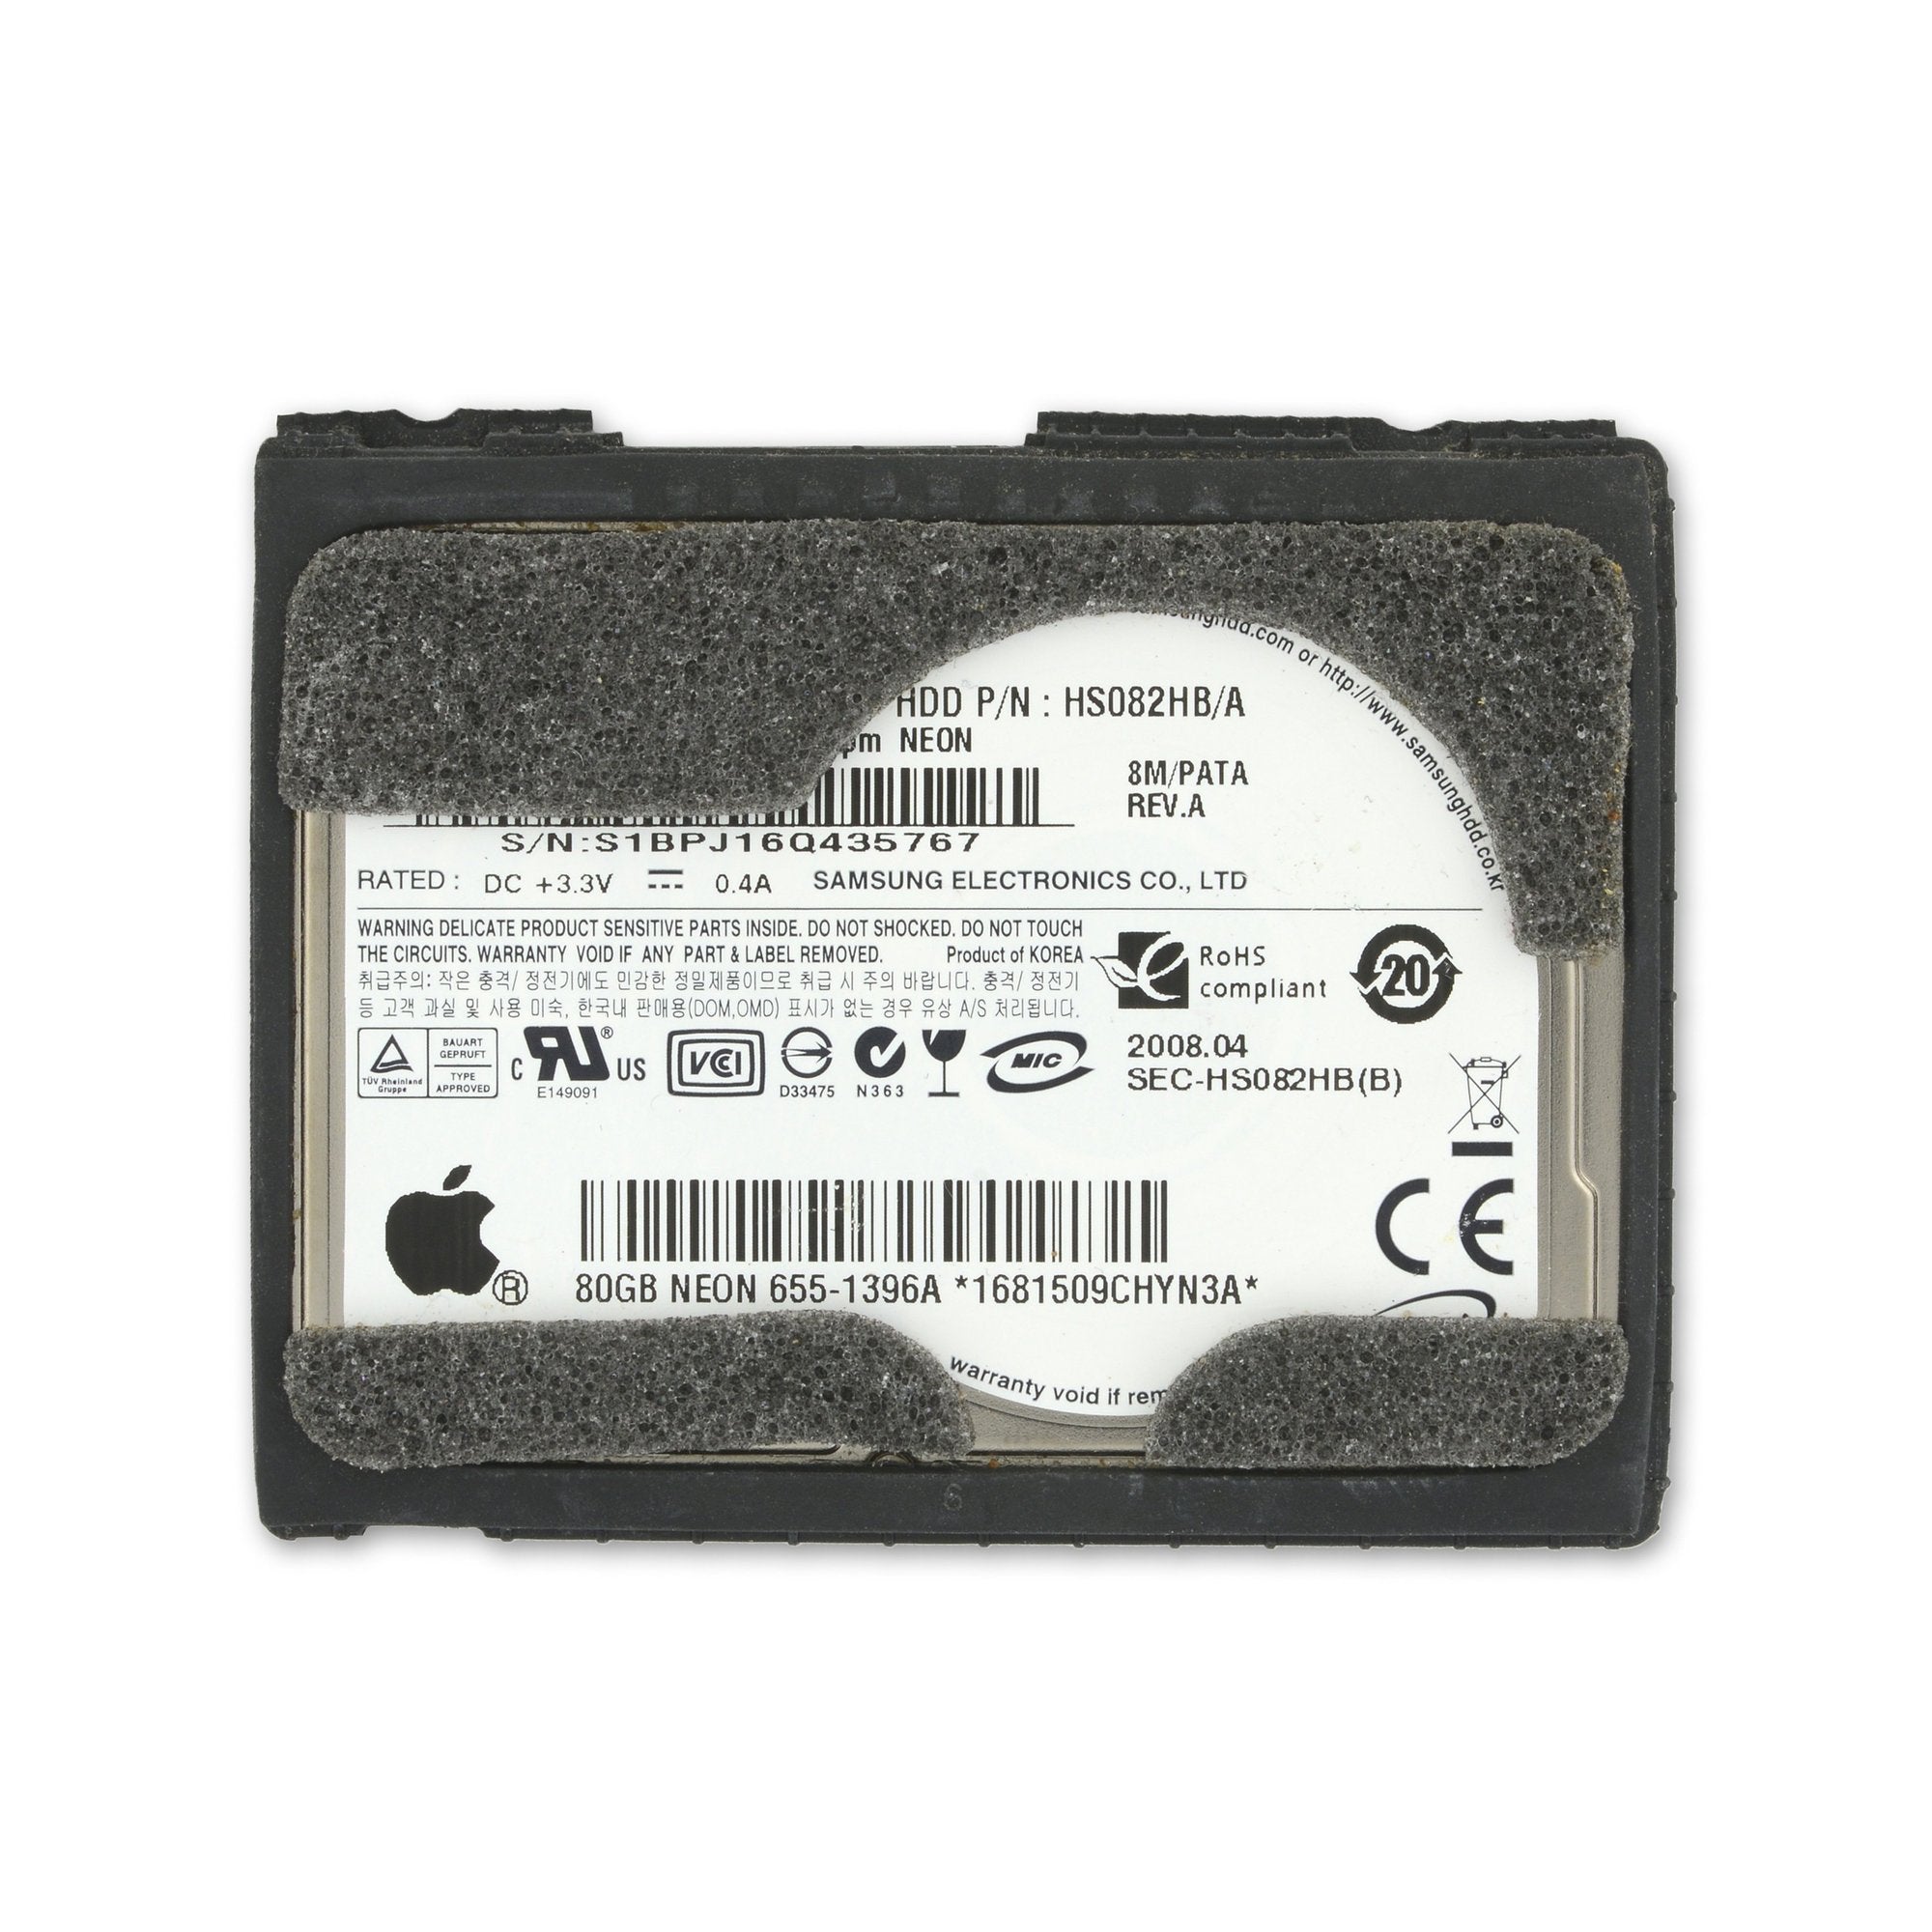 MacBook Air (Original) 80 GB Hard Drive Used